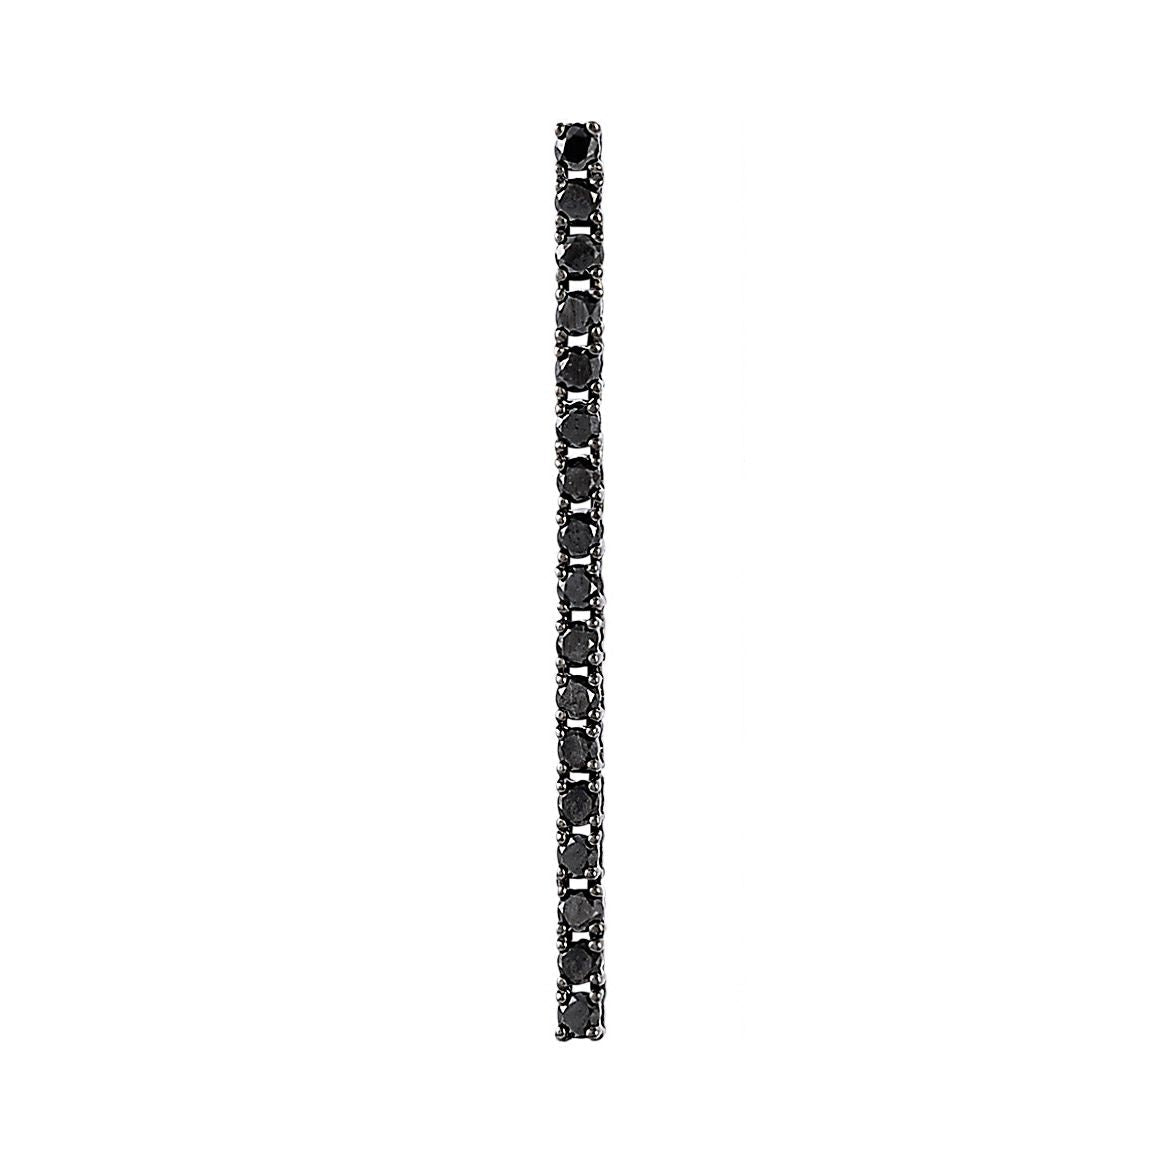 Brinco Voyeur De Ouro Branco 18K Com Ródio Negro E Diamante Negro - Unitário - Jack Vartanian - Longos E Franjas